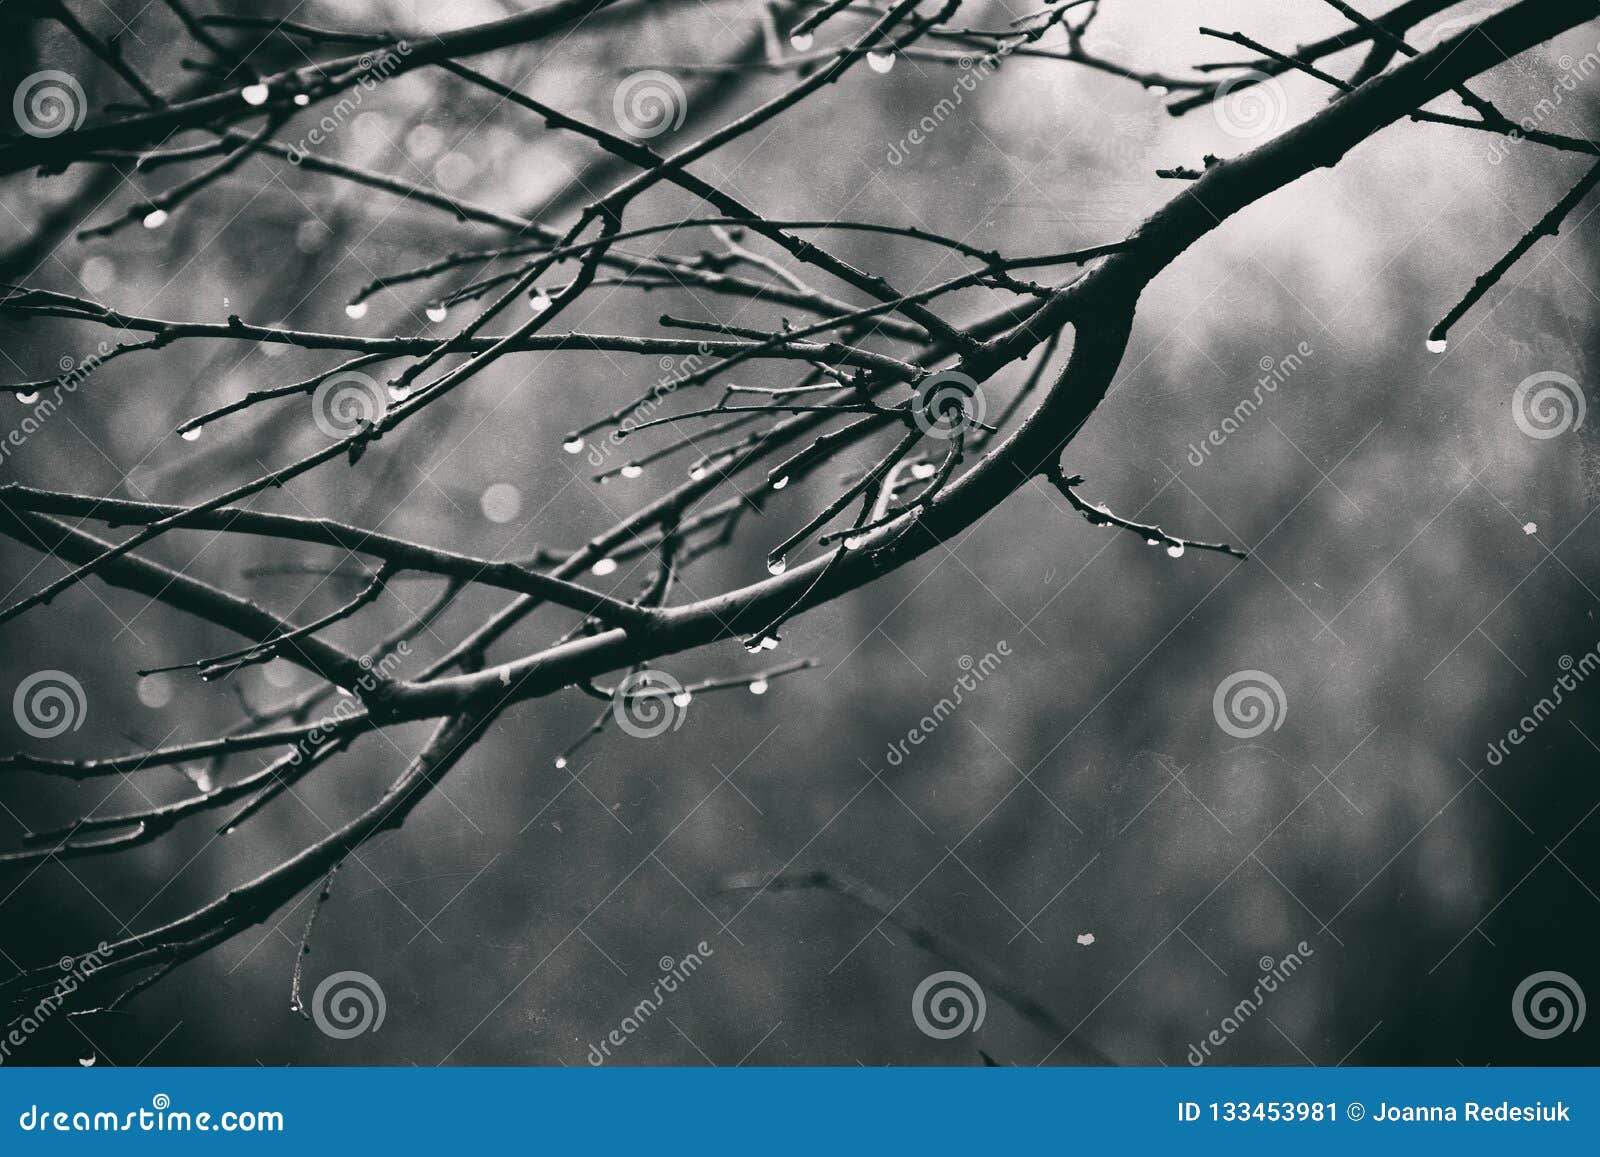 Ramos de árvore leafless sós com gotas da água após um Novem. Ramos de árvore leafless sós bonitos com gotas da água após uma chuva fria de novembro